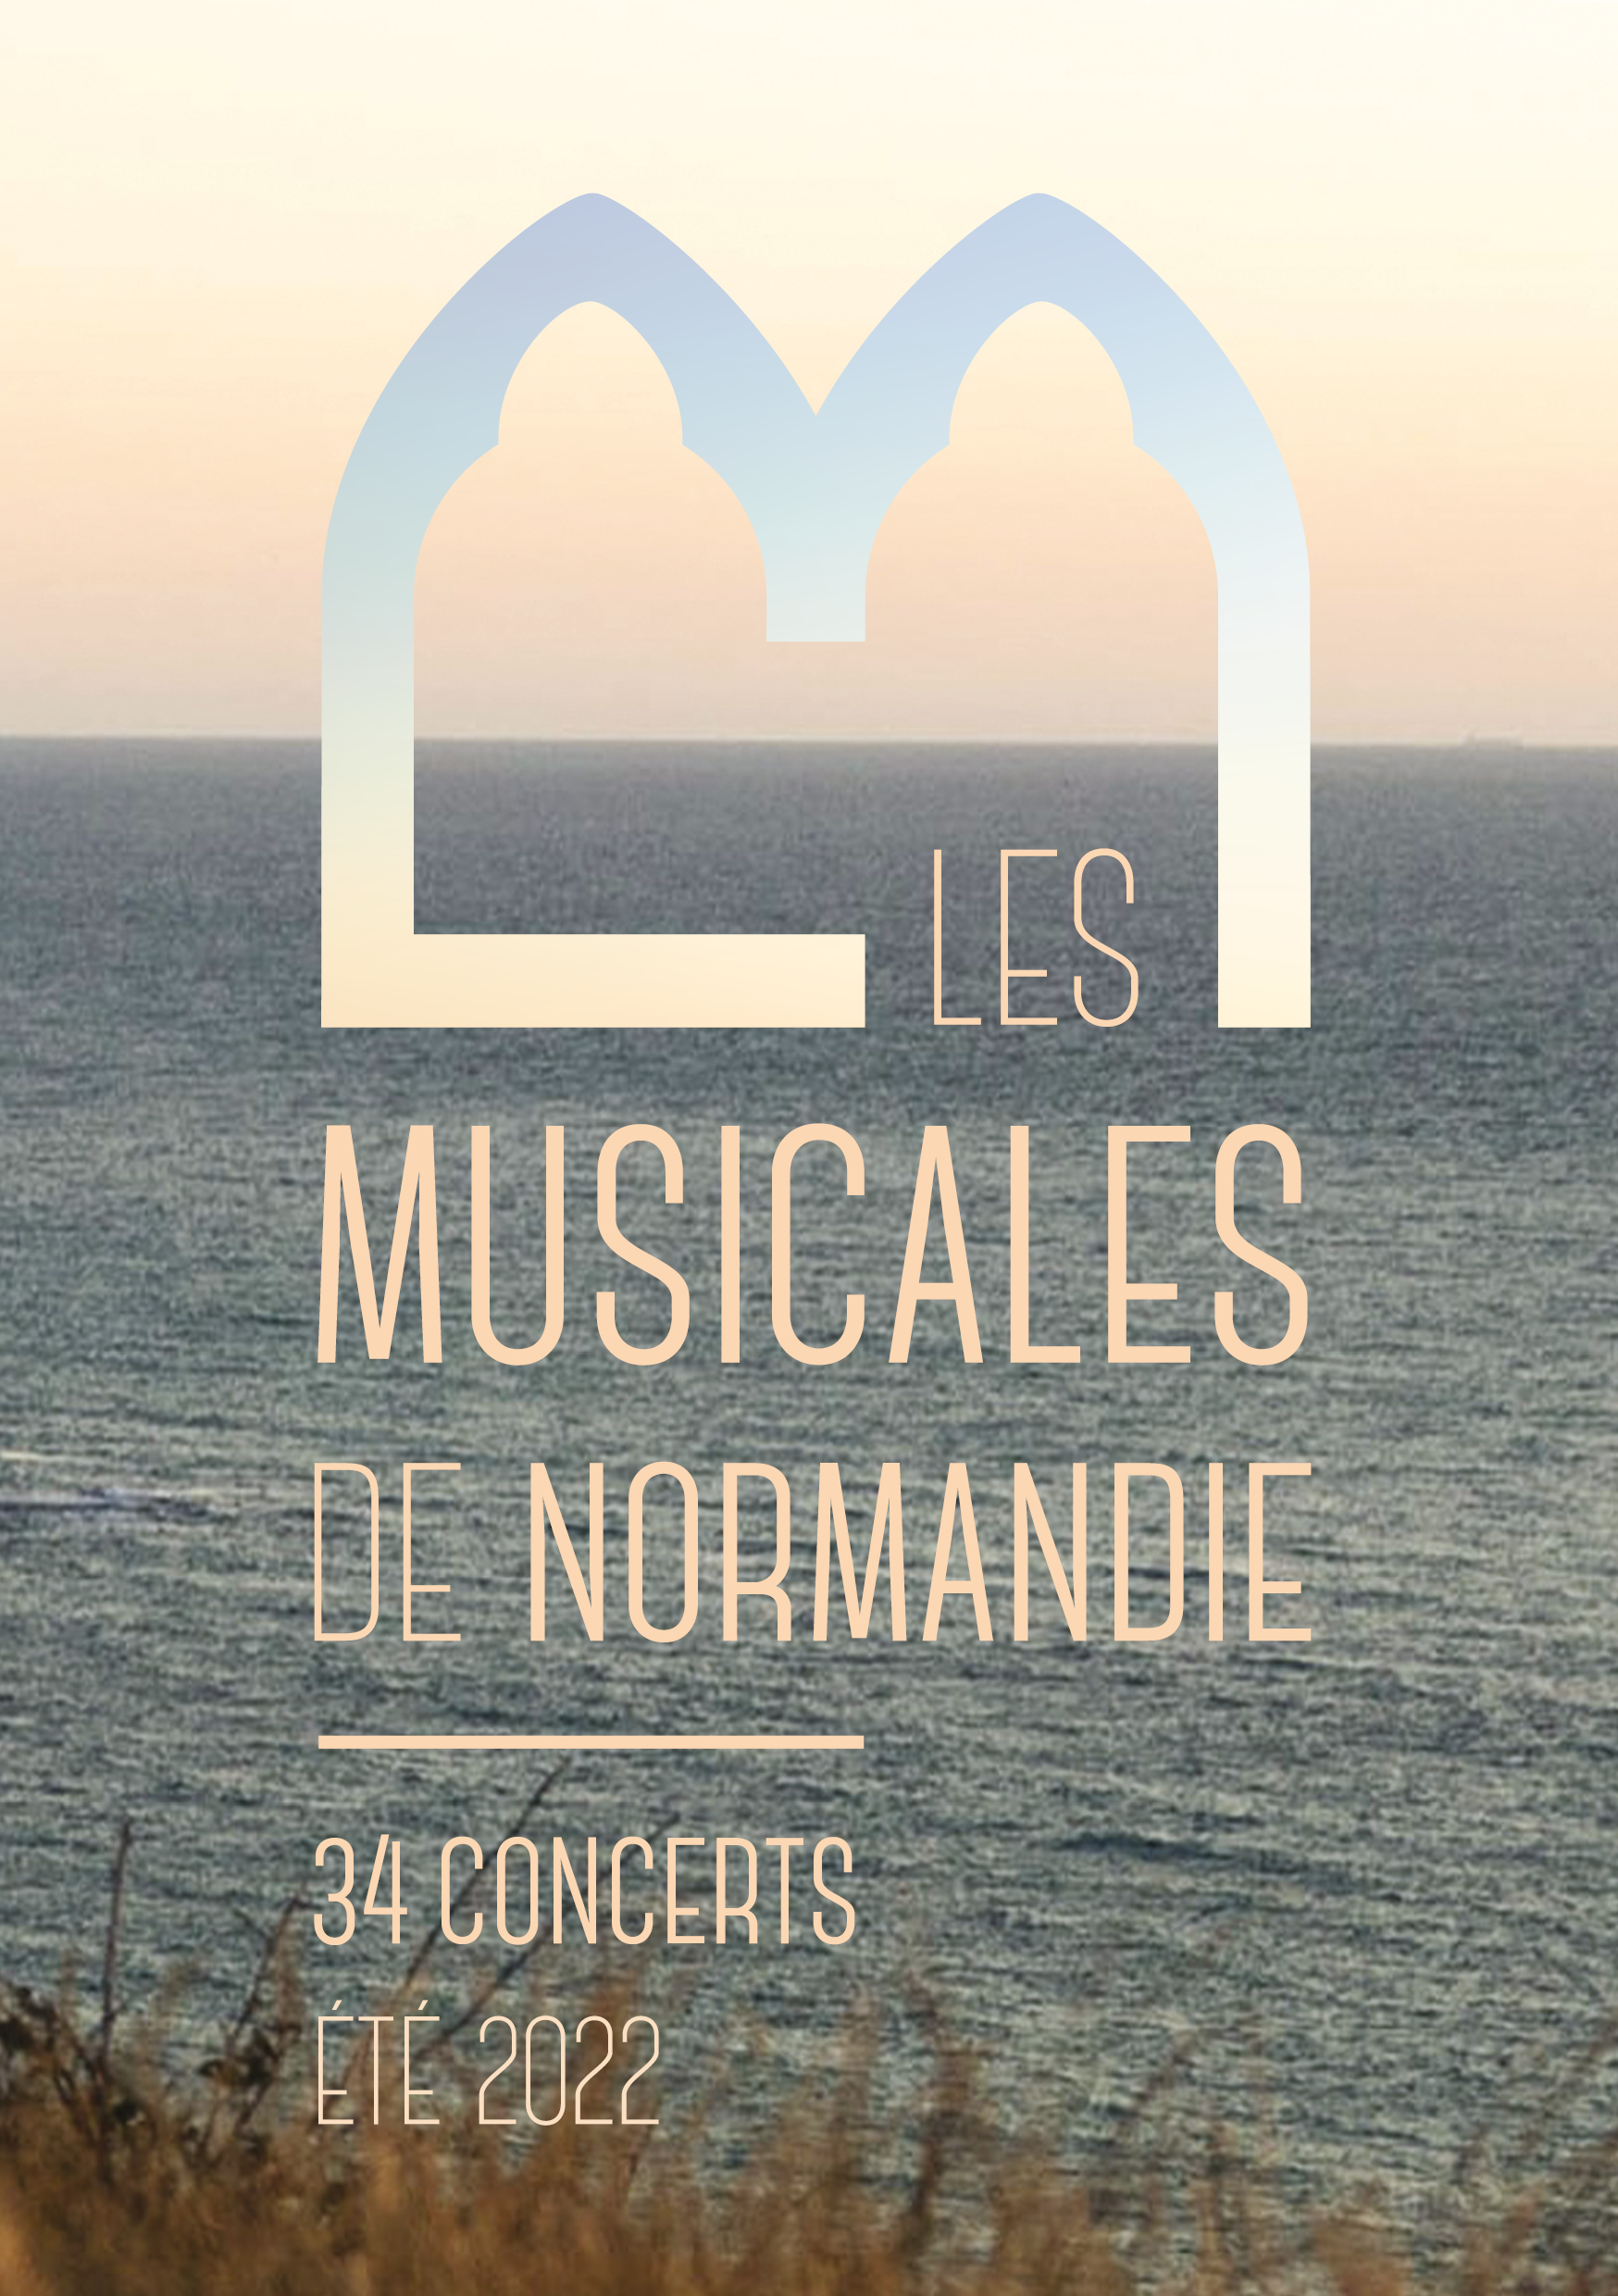 PAUL GOUSSOT, ORGUE - Les Musicales de Normandie